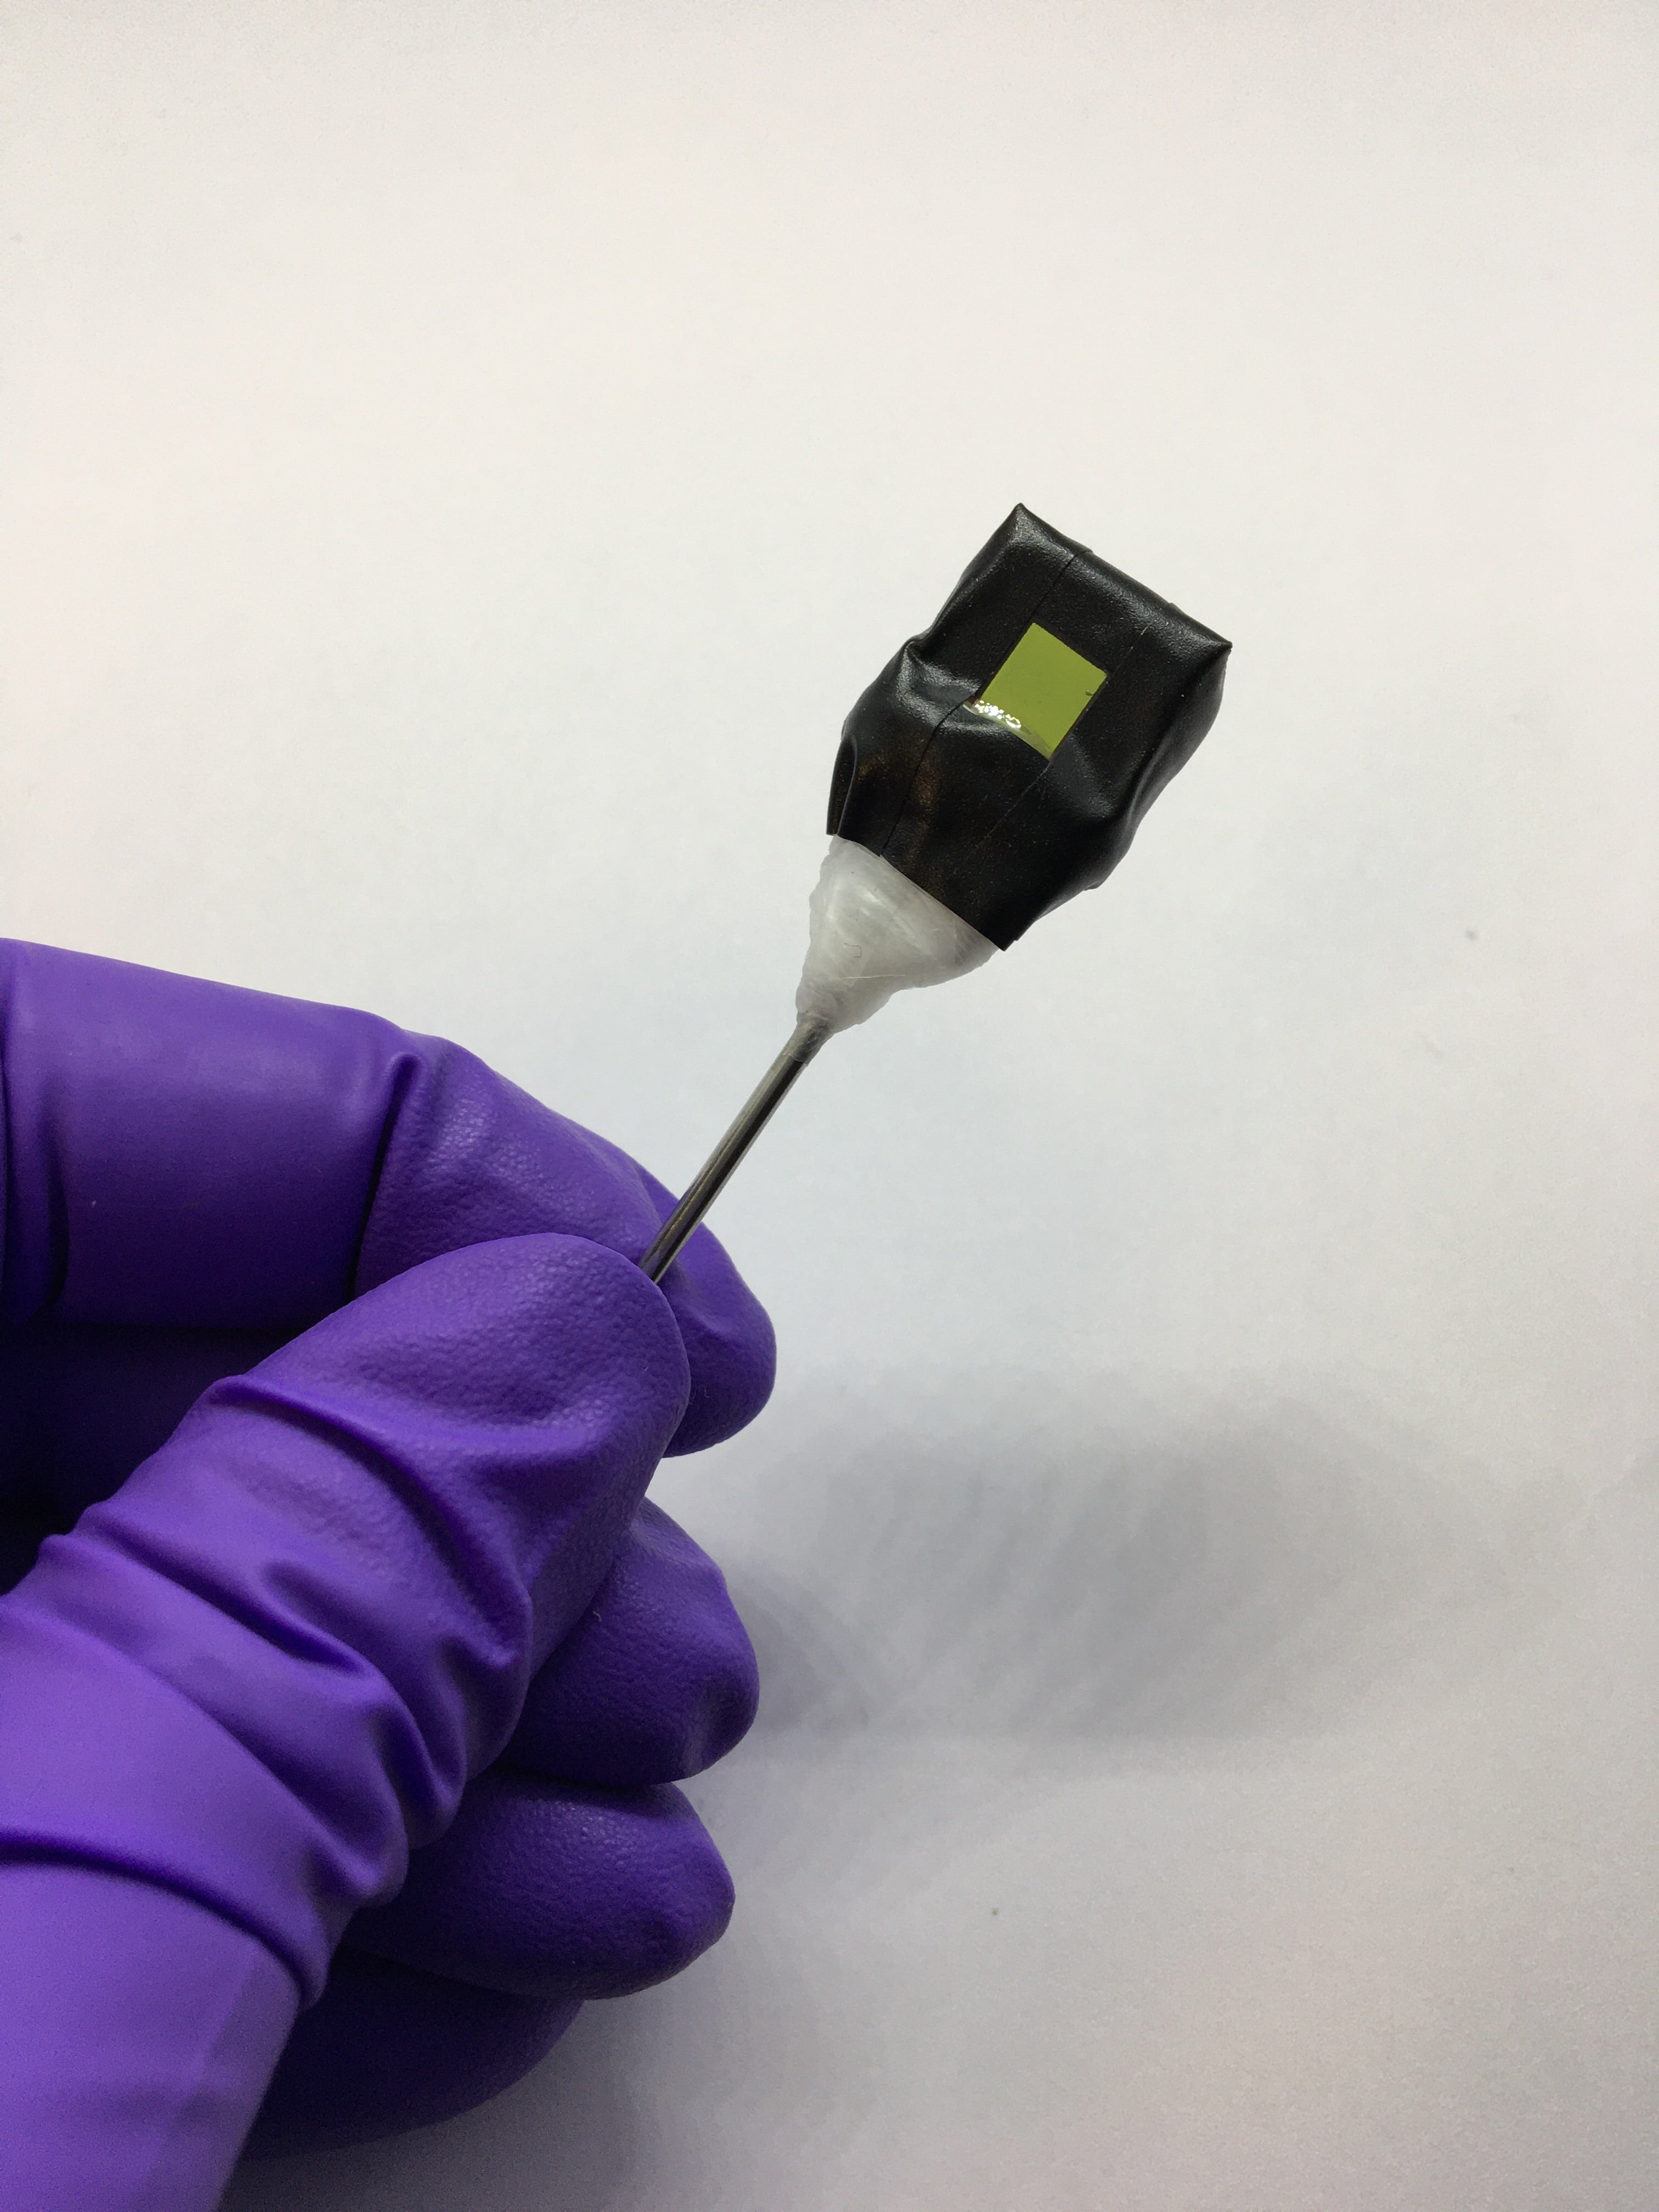 Una hoja artificial independiente sujeta a una varilla metálica. En la fotografía se ve el lado del fotoánodo (cuadrado verde). 